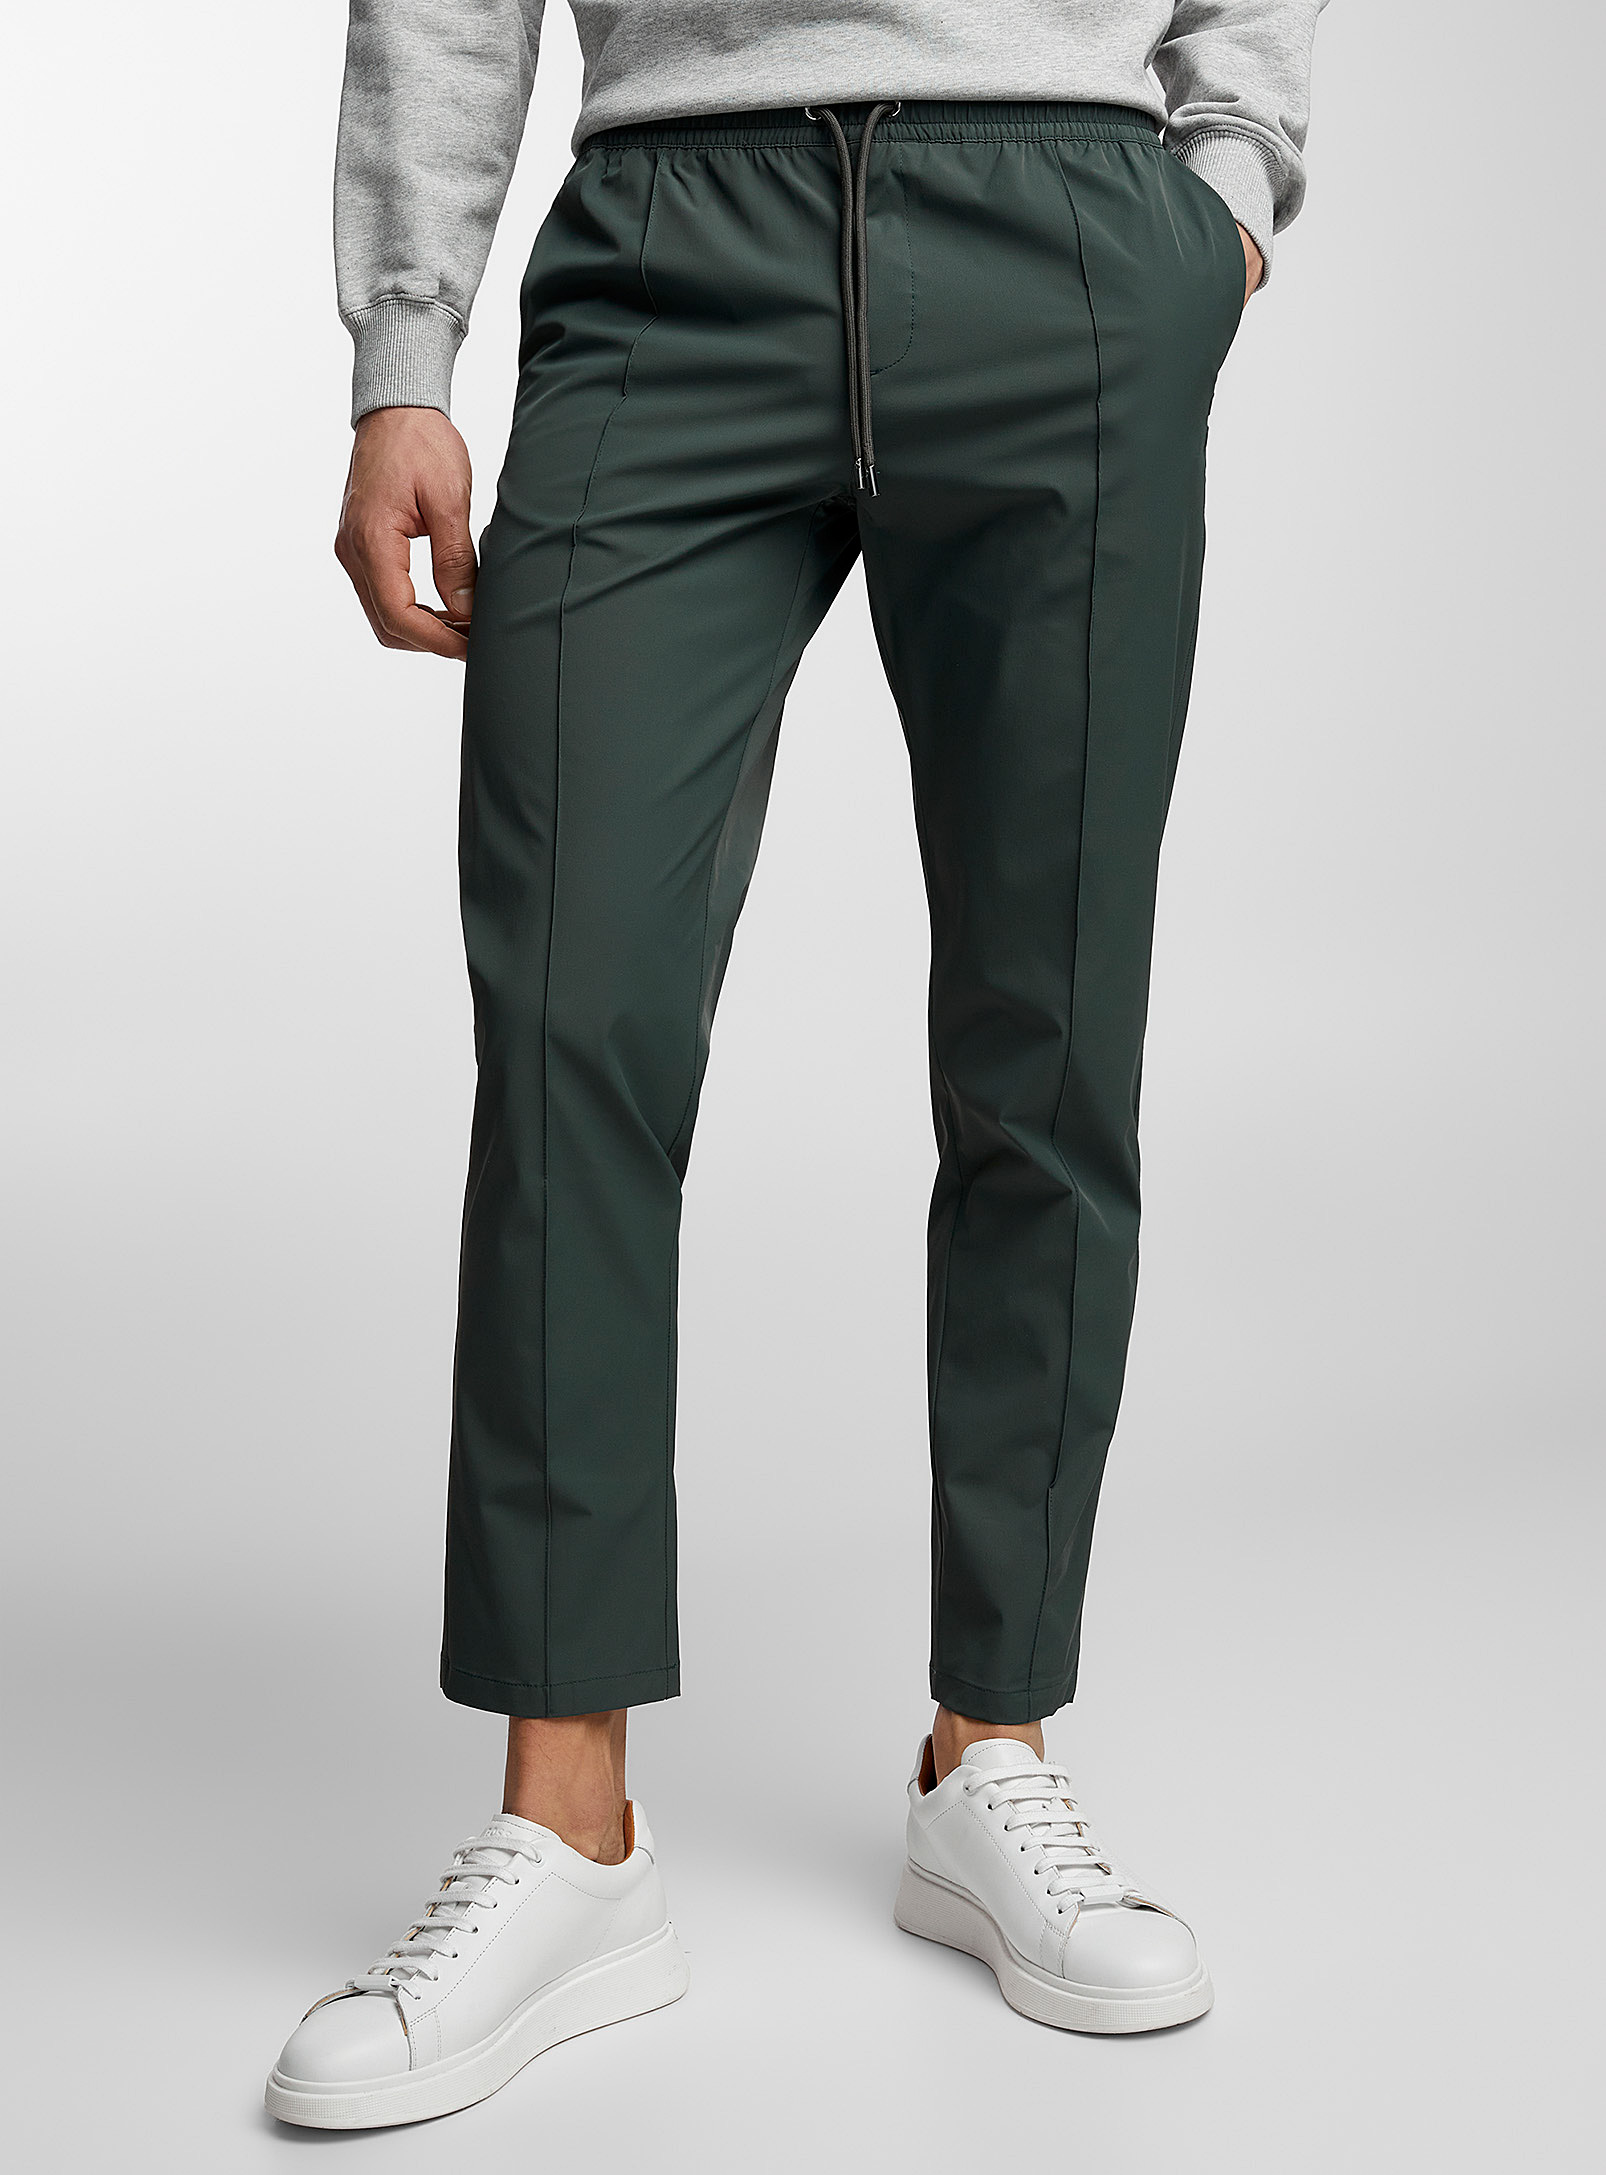 Ron Dorff - Le pantalon extensible vert utilitaire